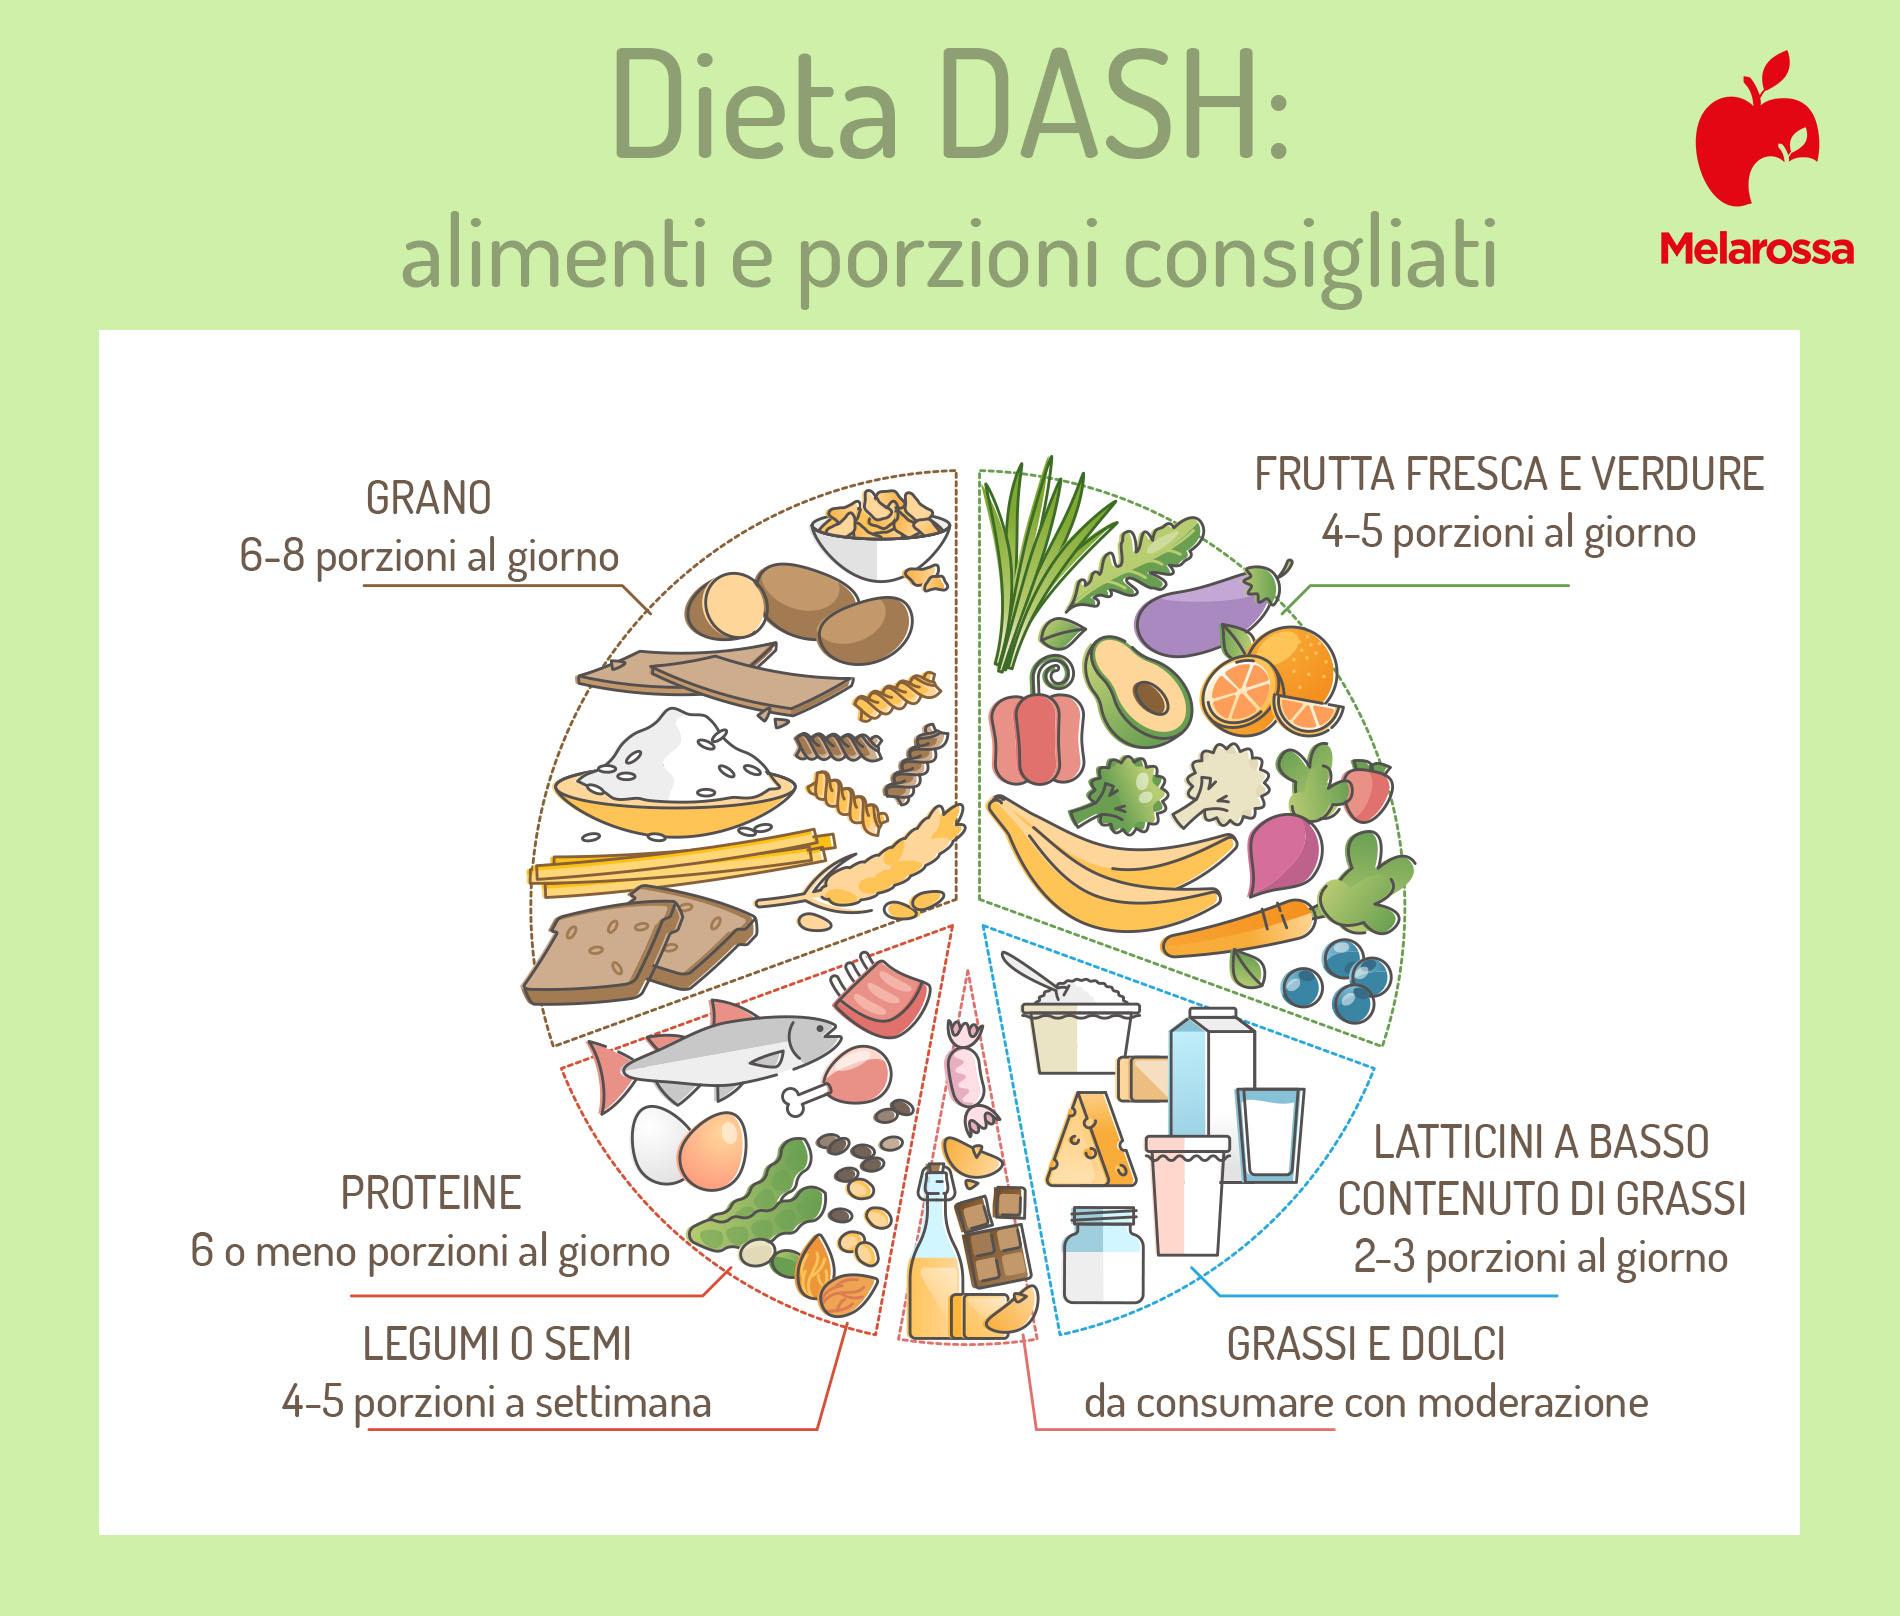 dieta Dash: che cos'è?